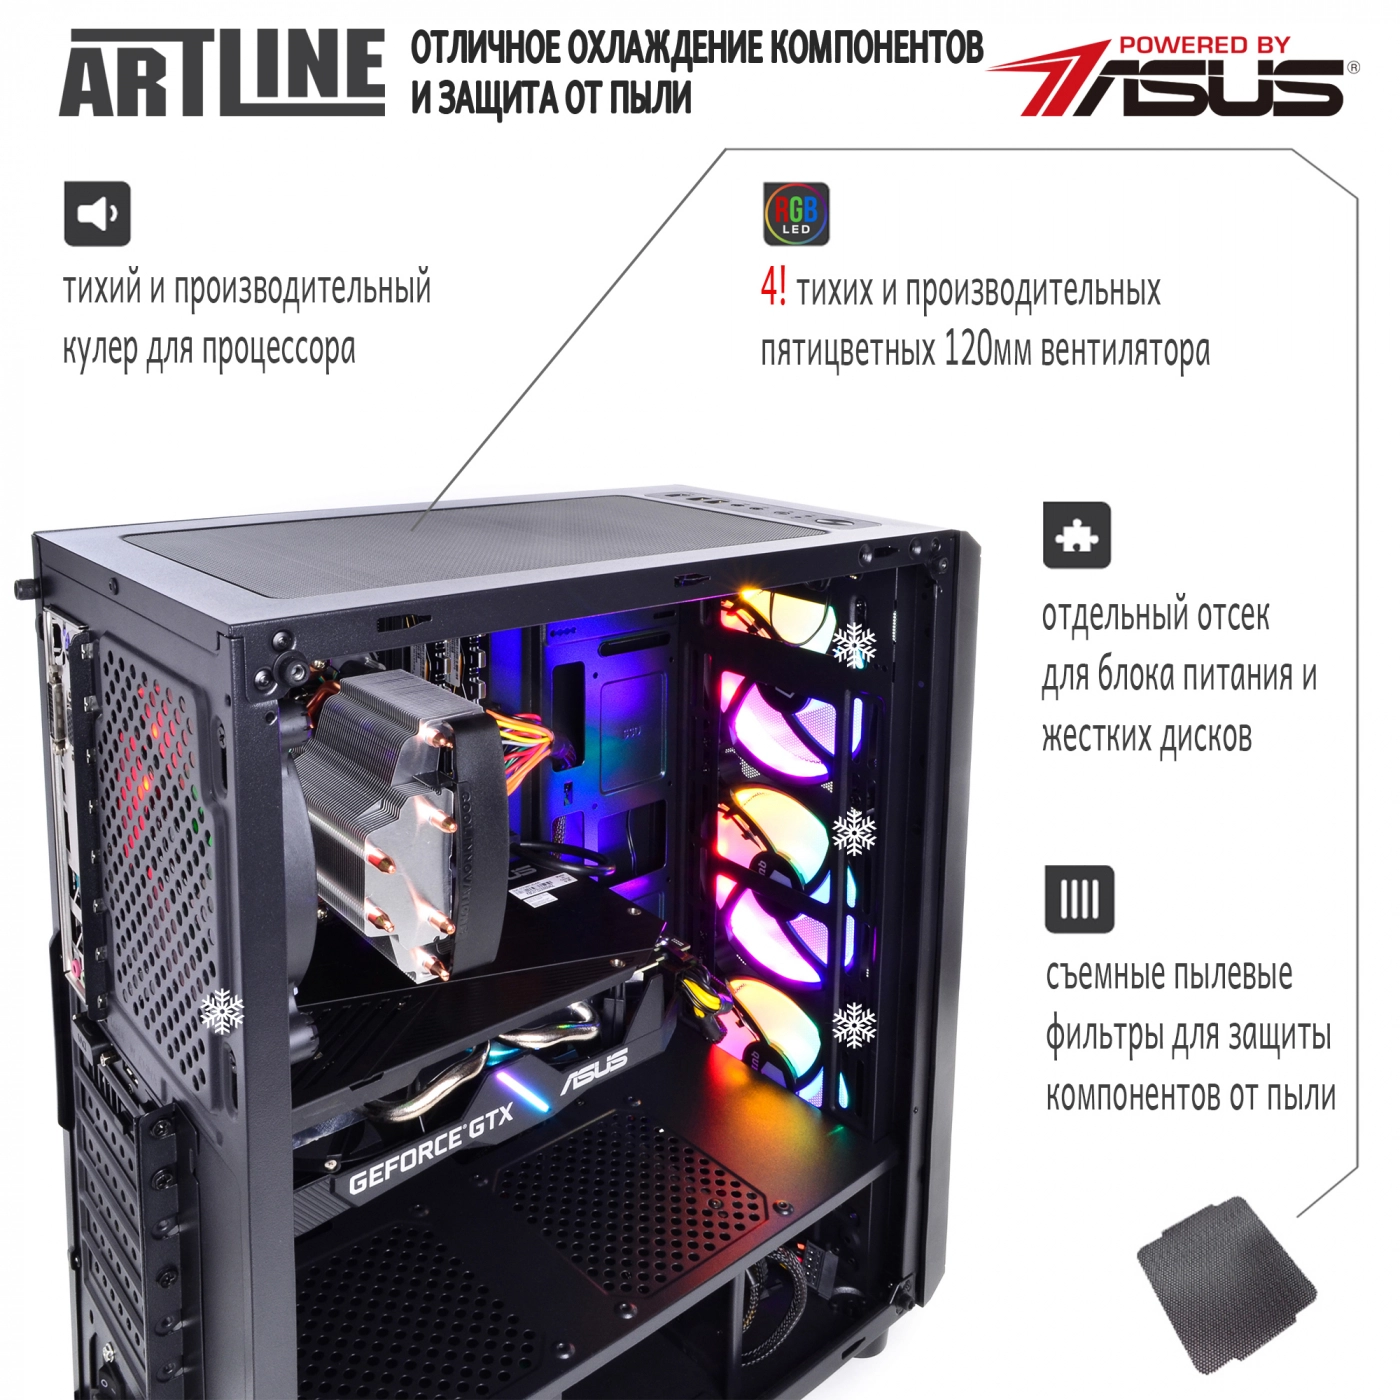 Купить Компьютер ARTLINE Gaming X65v24 - фото 3